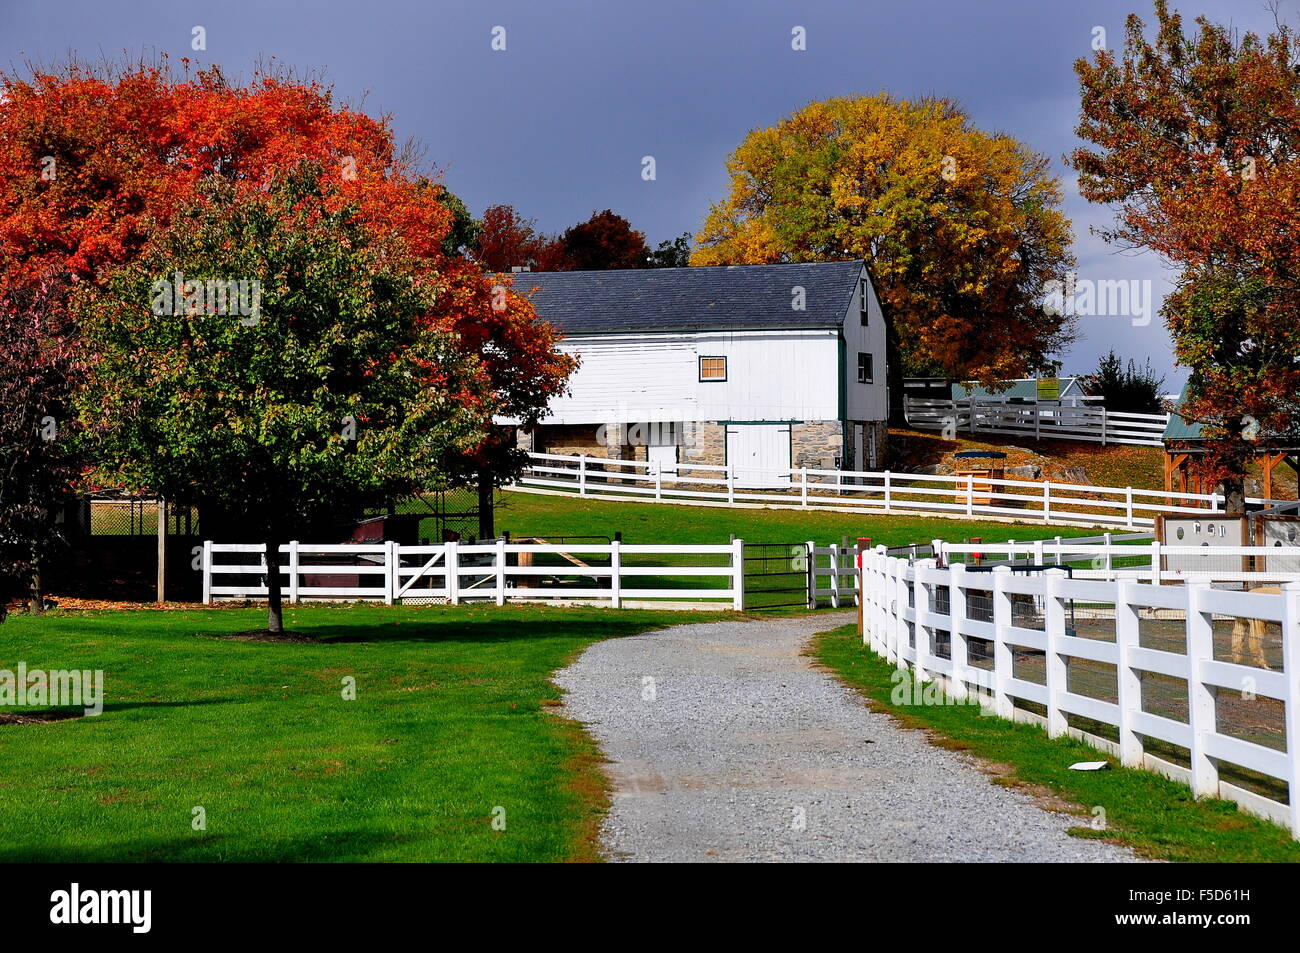 Lancaster, Pennslvania : clôtures blanches, des sentiers, des arbres à feuillage de l'automne, et l'ancien hangar Matériel agricole * Banque D'Images